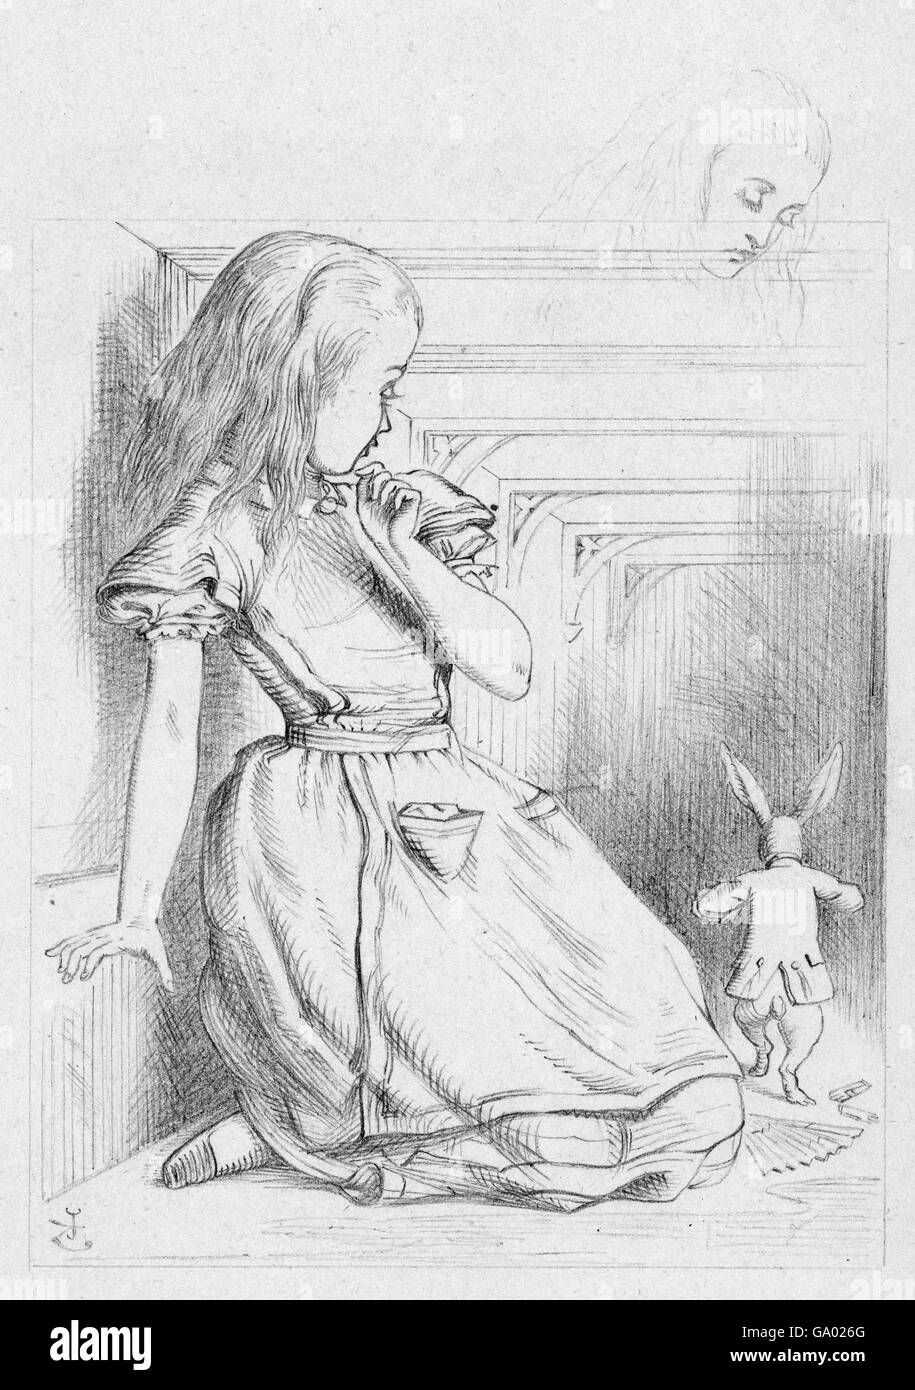 Alice au pays des merveilles. « The Rabbit scurried », une illustration de Sir John Tenniel pour « Alice in Wonderland » de Lewis Carroll montrant Alice et le lapin blanc. Dessin au crayon sur papier, c.1866. Banque D'Images